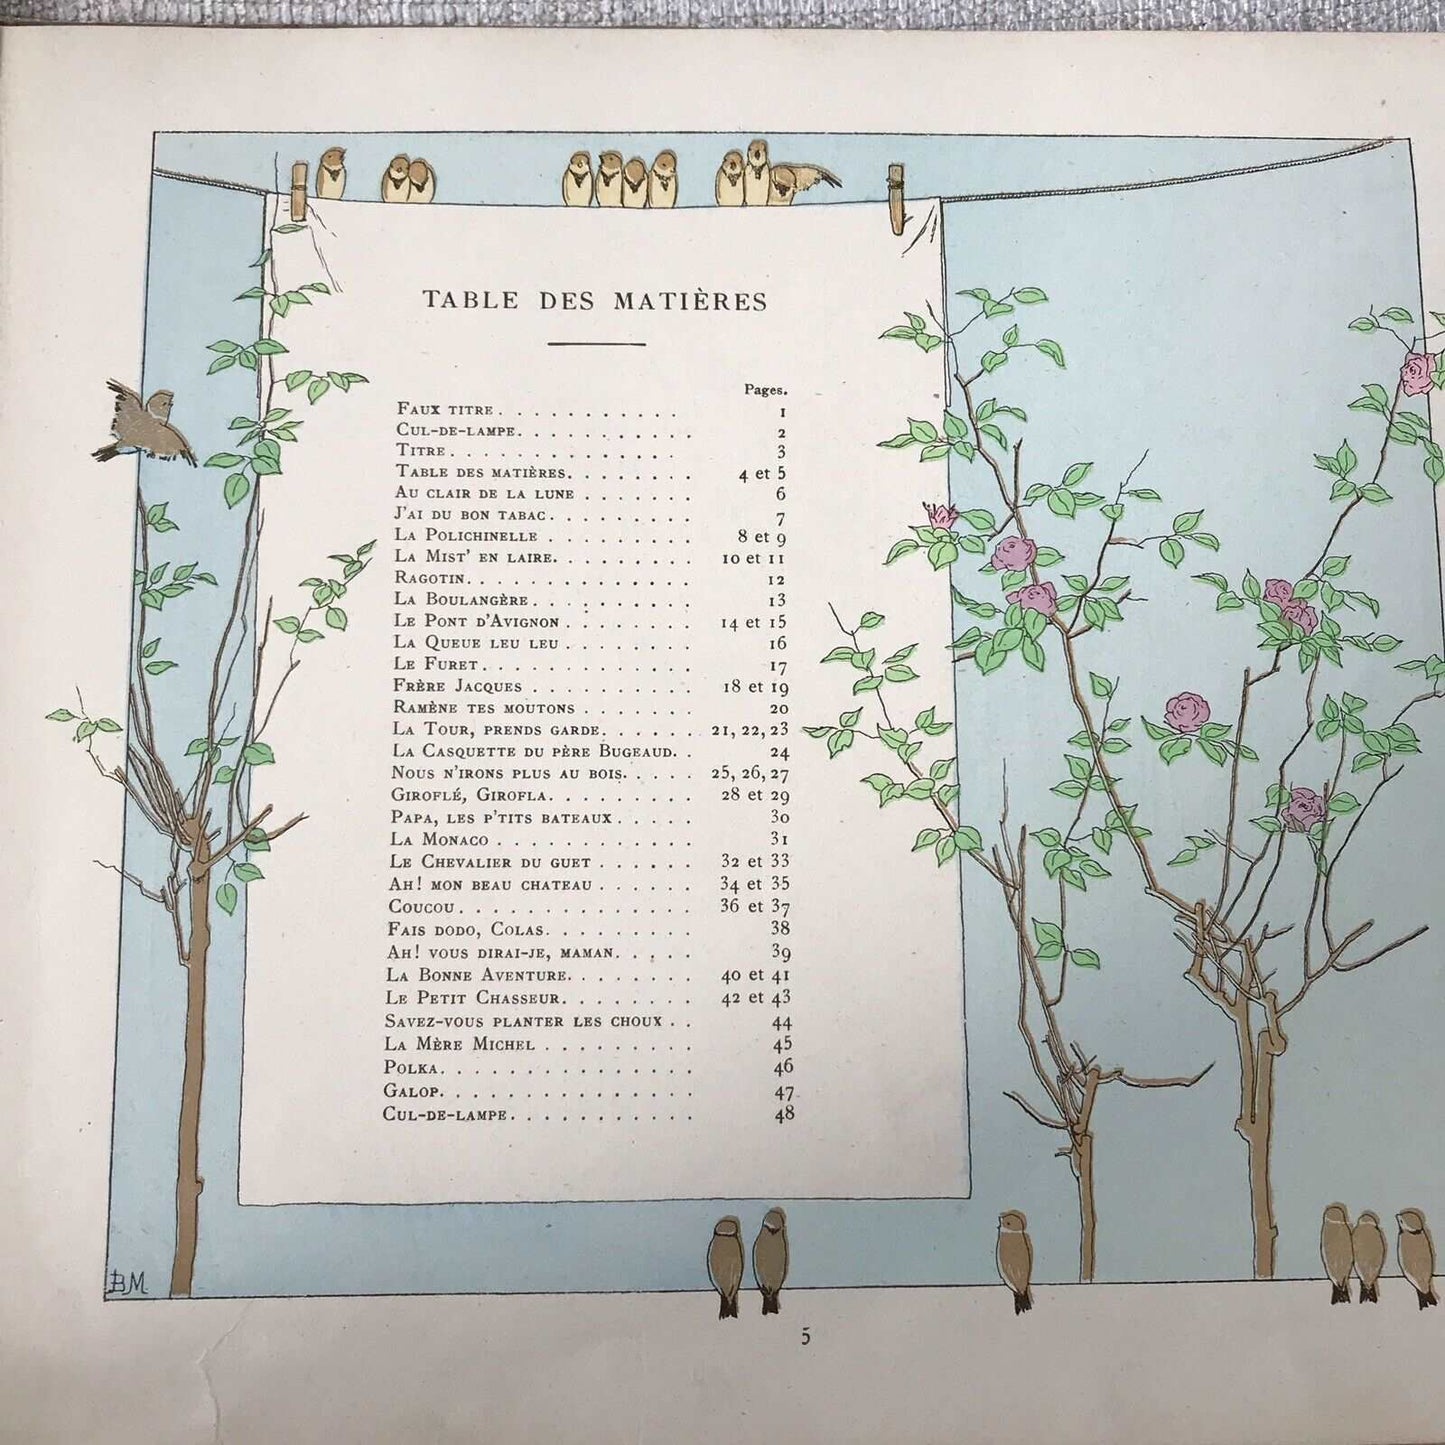 1927*1st* Vielles Chansons Et Rondes Pour Les Petits Enfants (Librairie Plon) Honeyburn Books (UK)